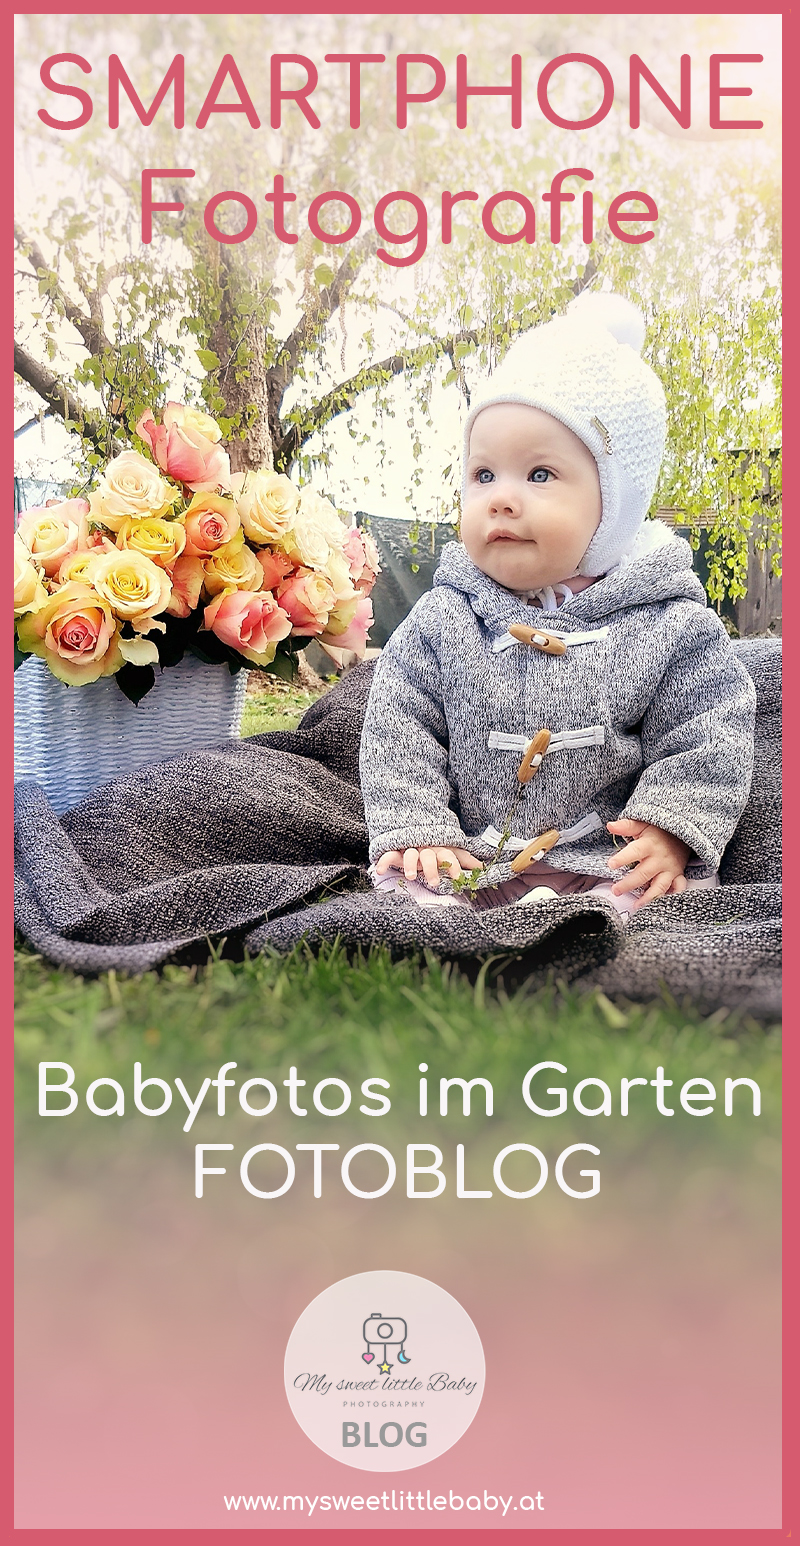 So gelingen dir Babyfotos im Garten - auch mit dem Smartphone - Barbara Lachner - Autorin und Fotografin - Barbara Lachner Blog-Bei Outdoor-Fotografie ist das Spiel mit Gegenlicht besonders schön. Kombiniert mit einem gezielt unscharfen Hintergrund um ein hübsches Bokeh zu erhalten lassen sich beeindruckende Babyfotos erstellen.